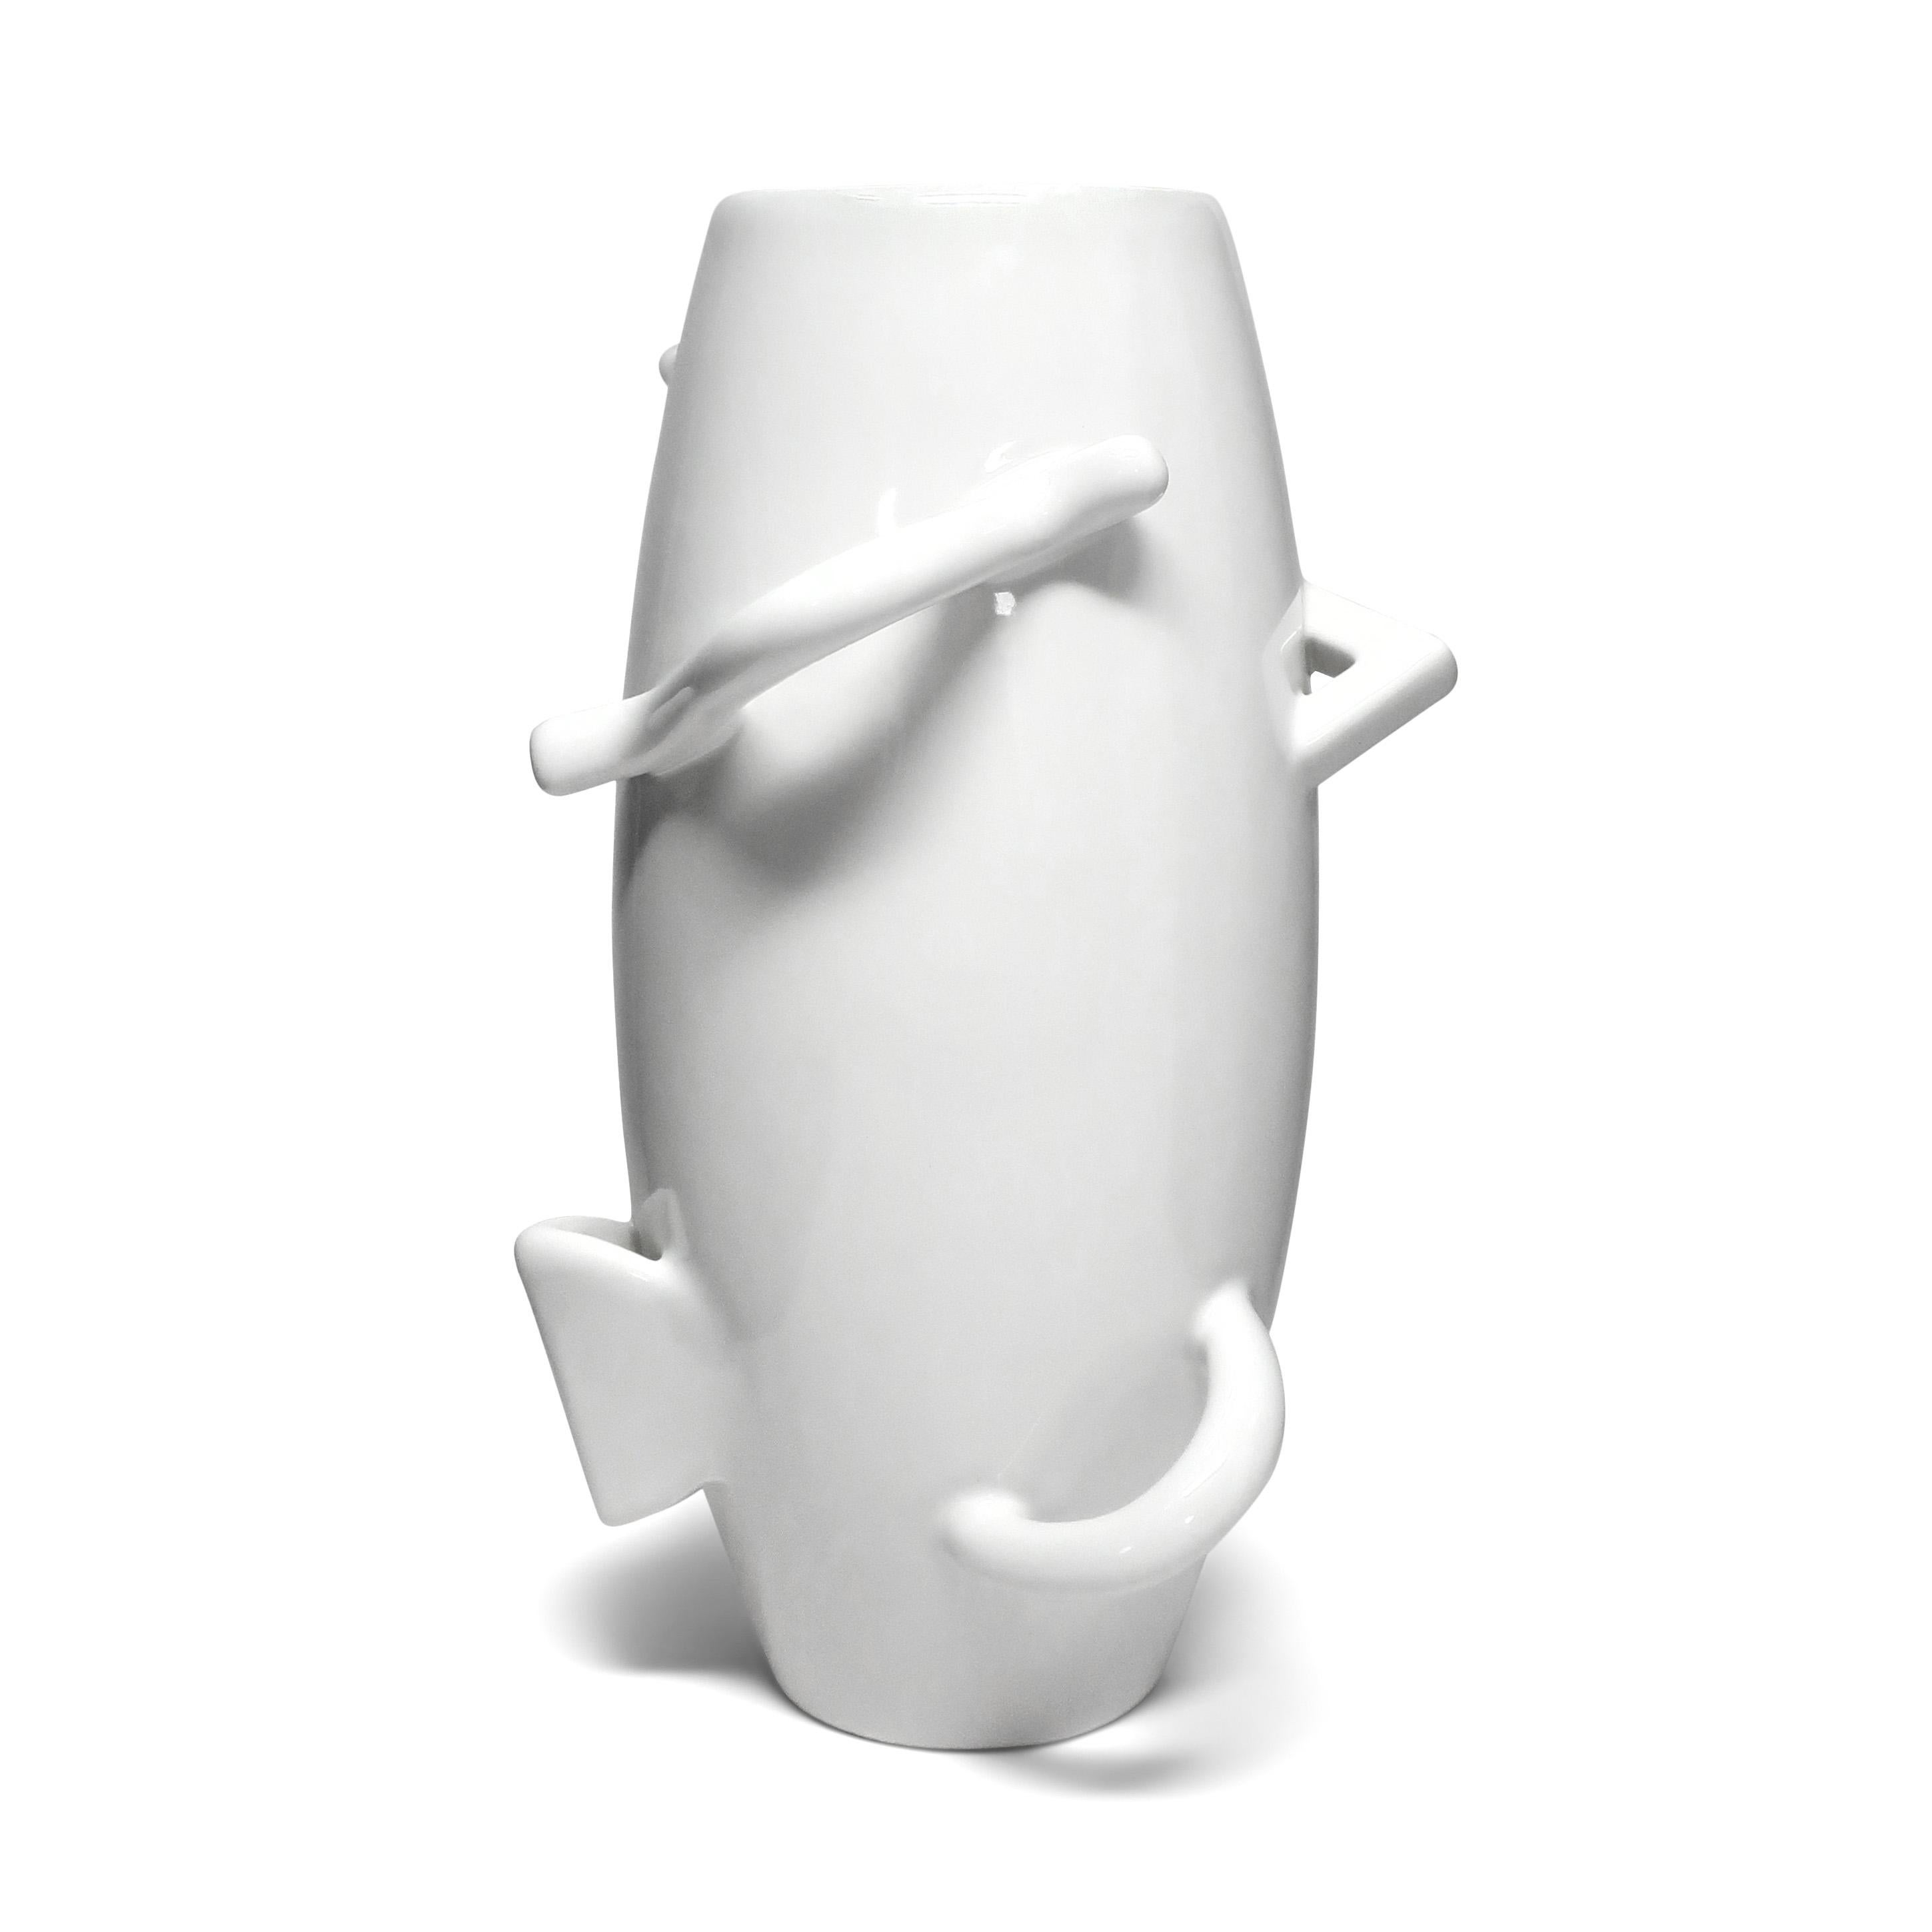 Eine erstaunliche postmoderne Vase aus weißem Porzellan, die von Alessandro Mendini (geb. 1931) für die Collection'S von Zanotta entworfen und in limitierter Auflage hergestellt wurde. Sie wurde als eine von drei Vasen herausgegeben, die Mendini